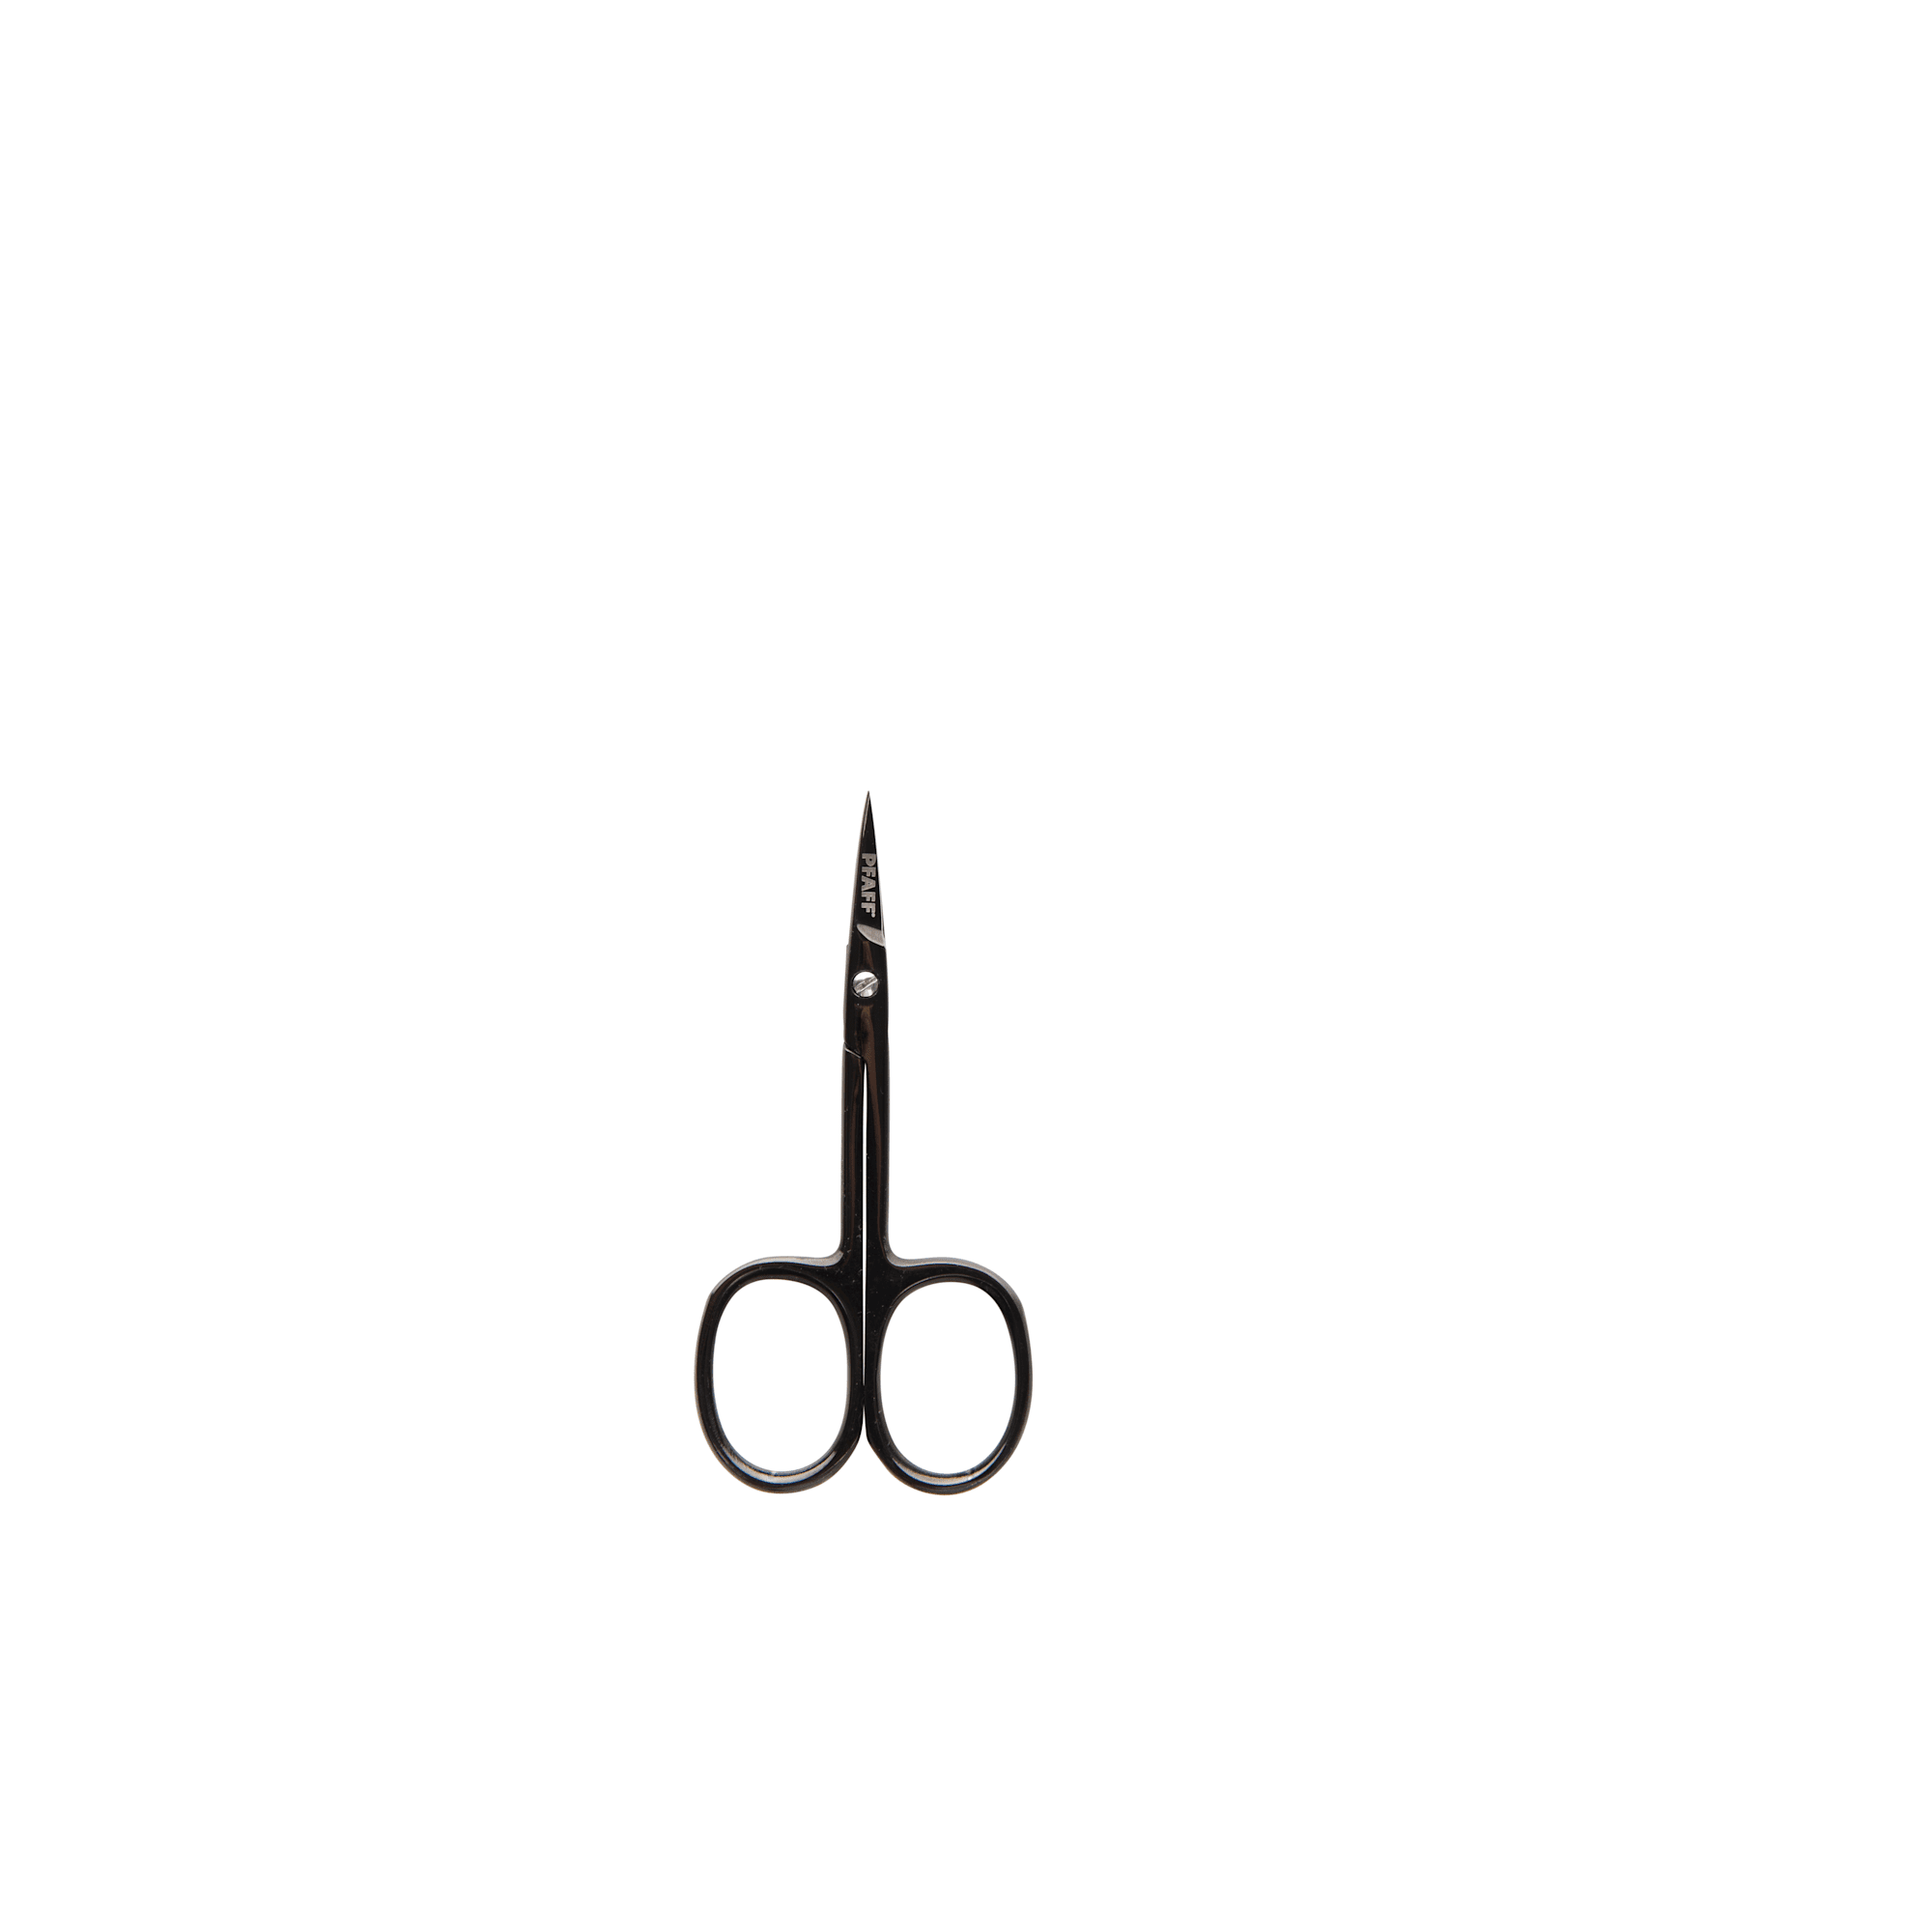 Pfaff Pfaff 3.5" / 8.9cm curved embroidery scissor